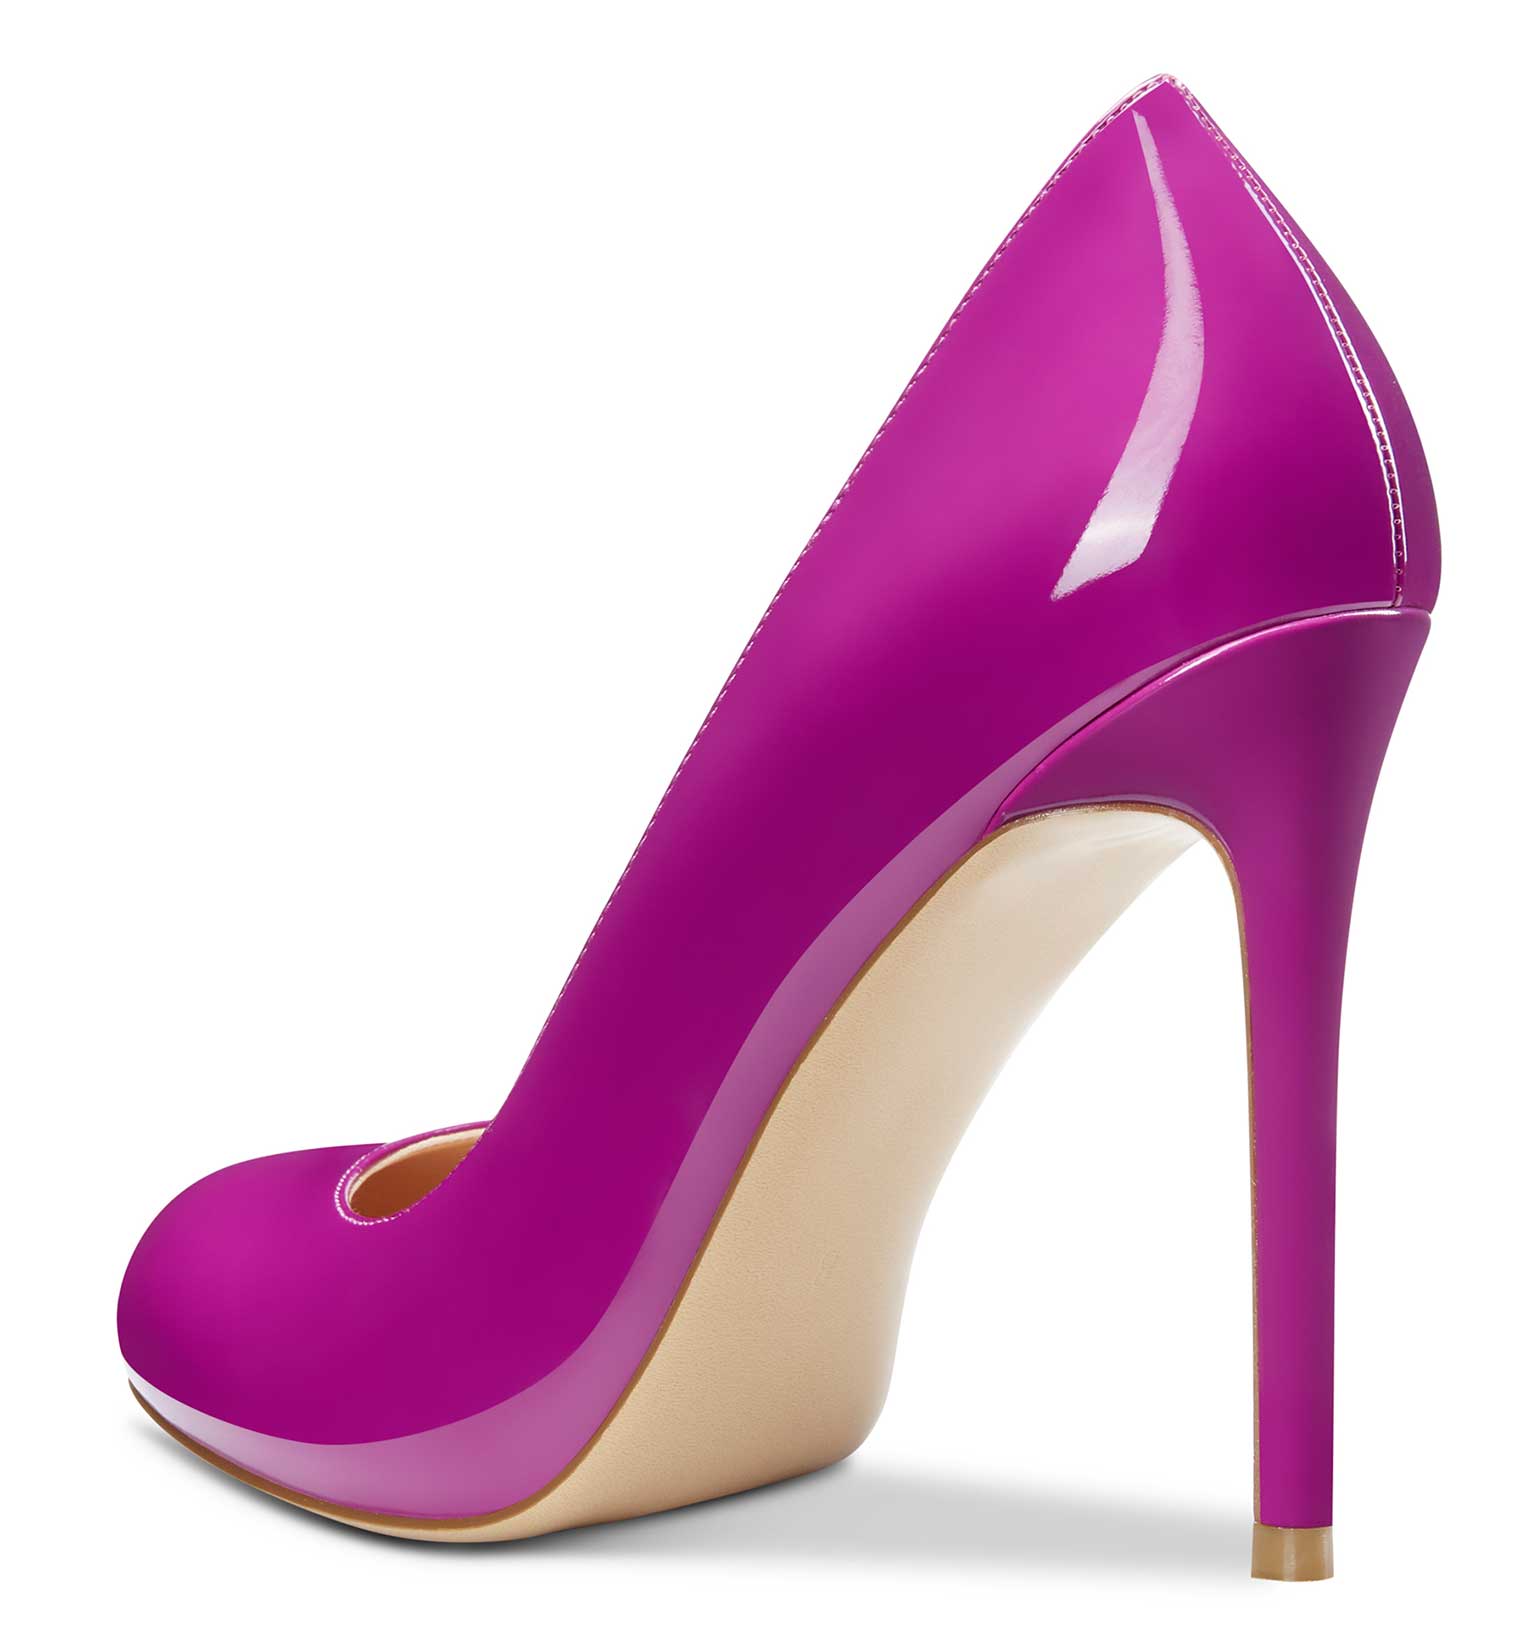 CASTAMERE Womens Round Toe High Heels Pumps Slip On Stilettos 10CM Heel Patent